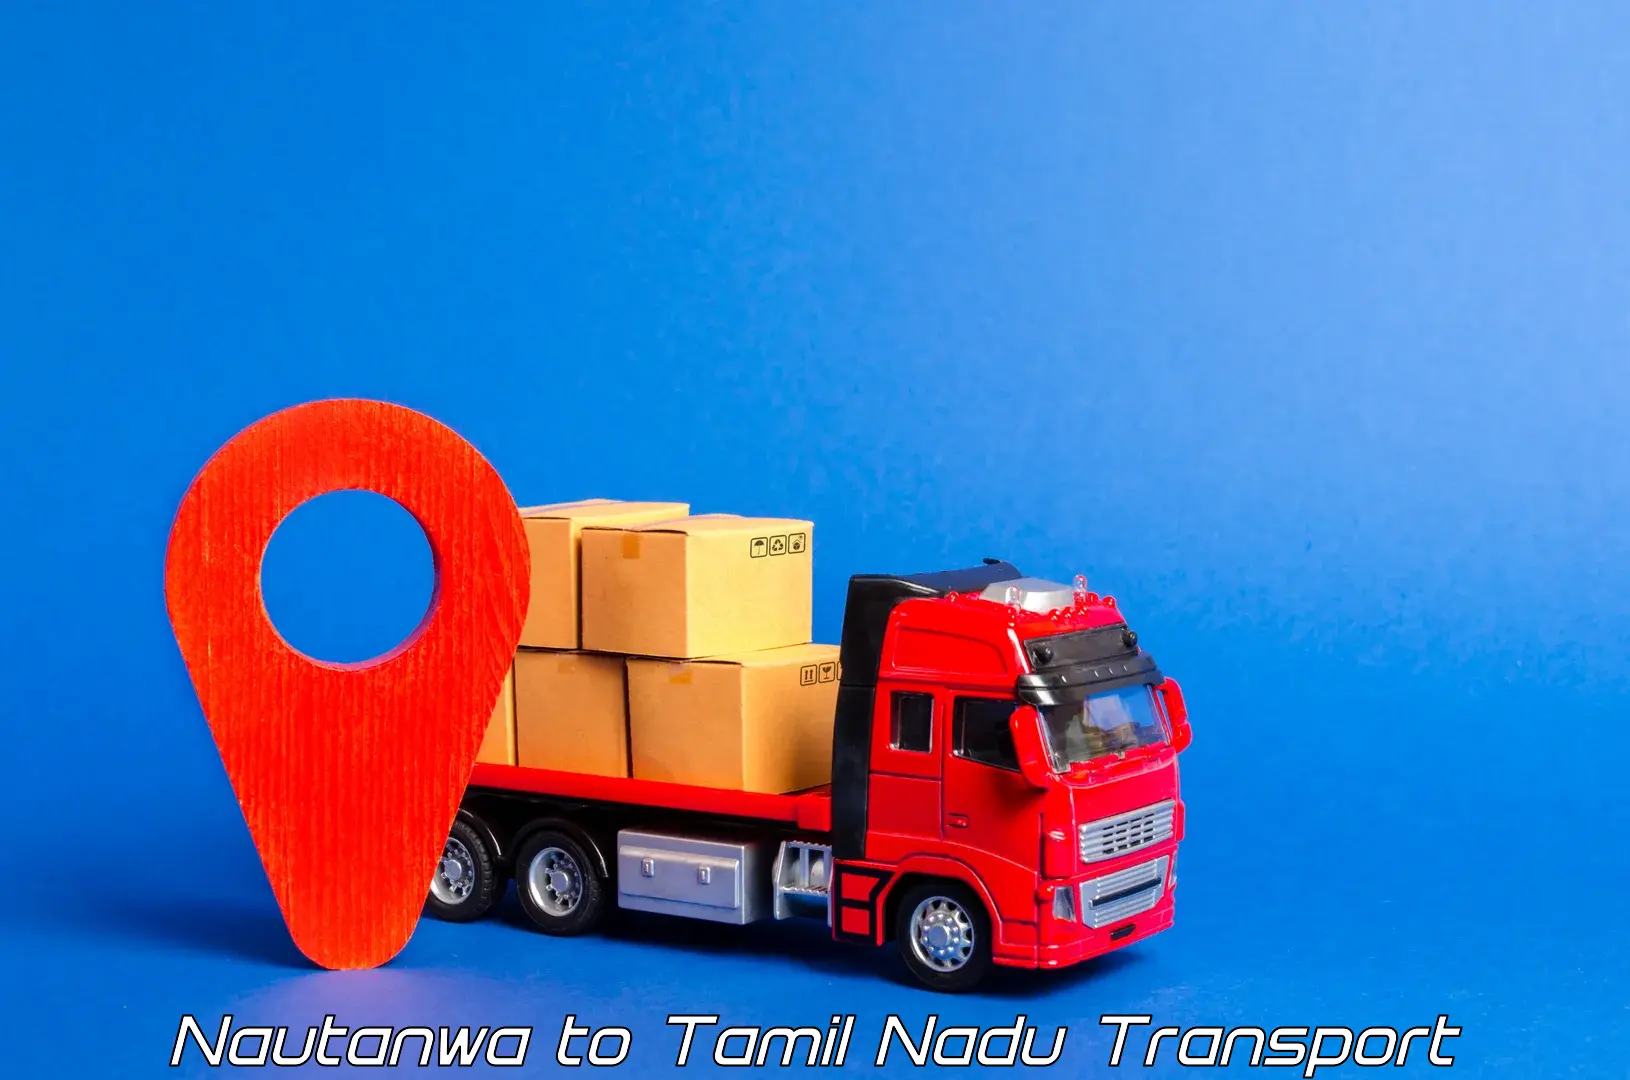 Scooty transport charges Nautanwa to Tirukalukundram